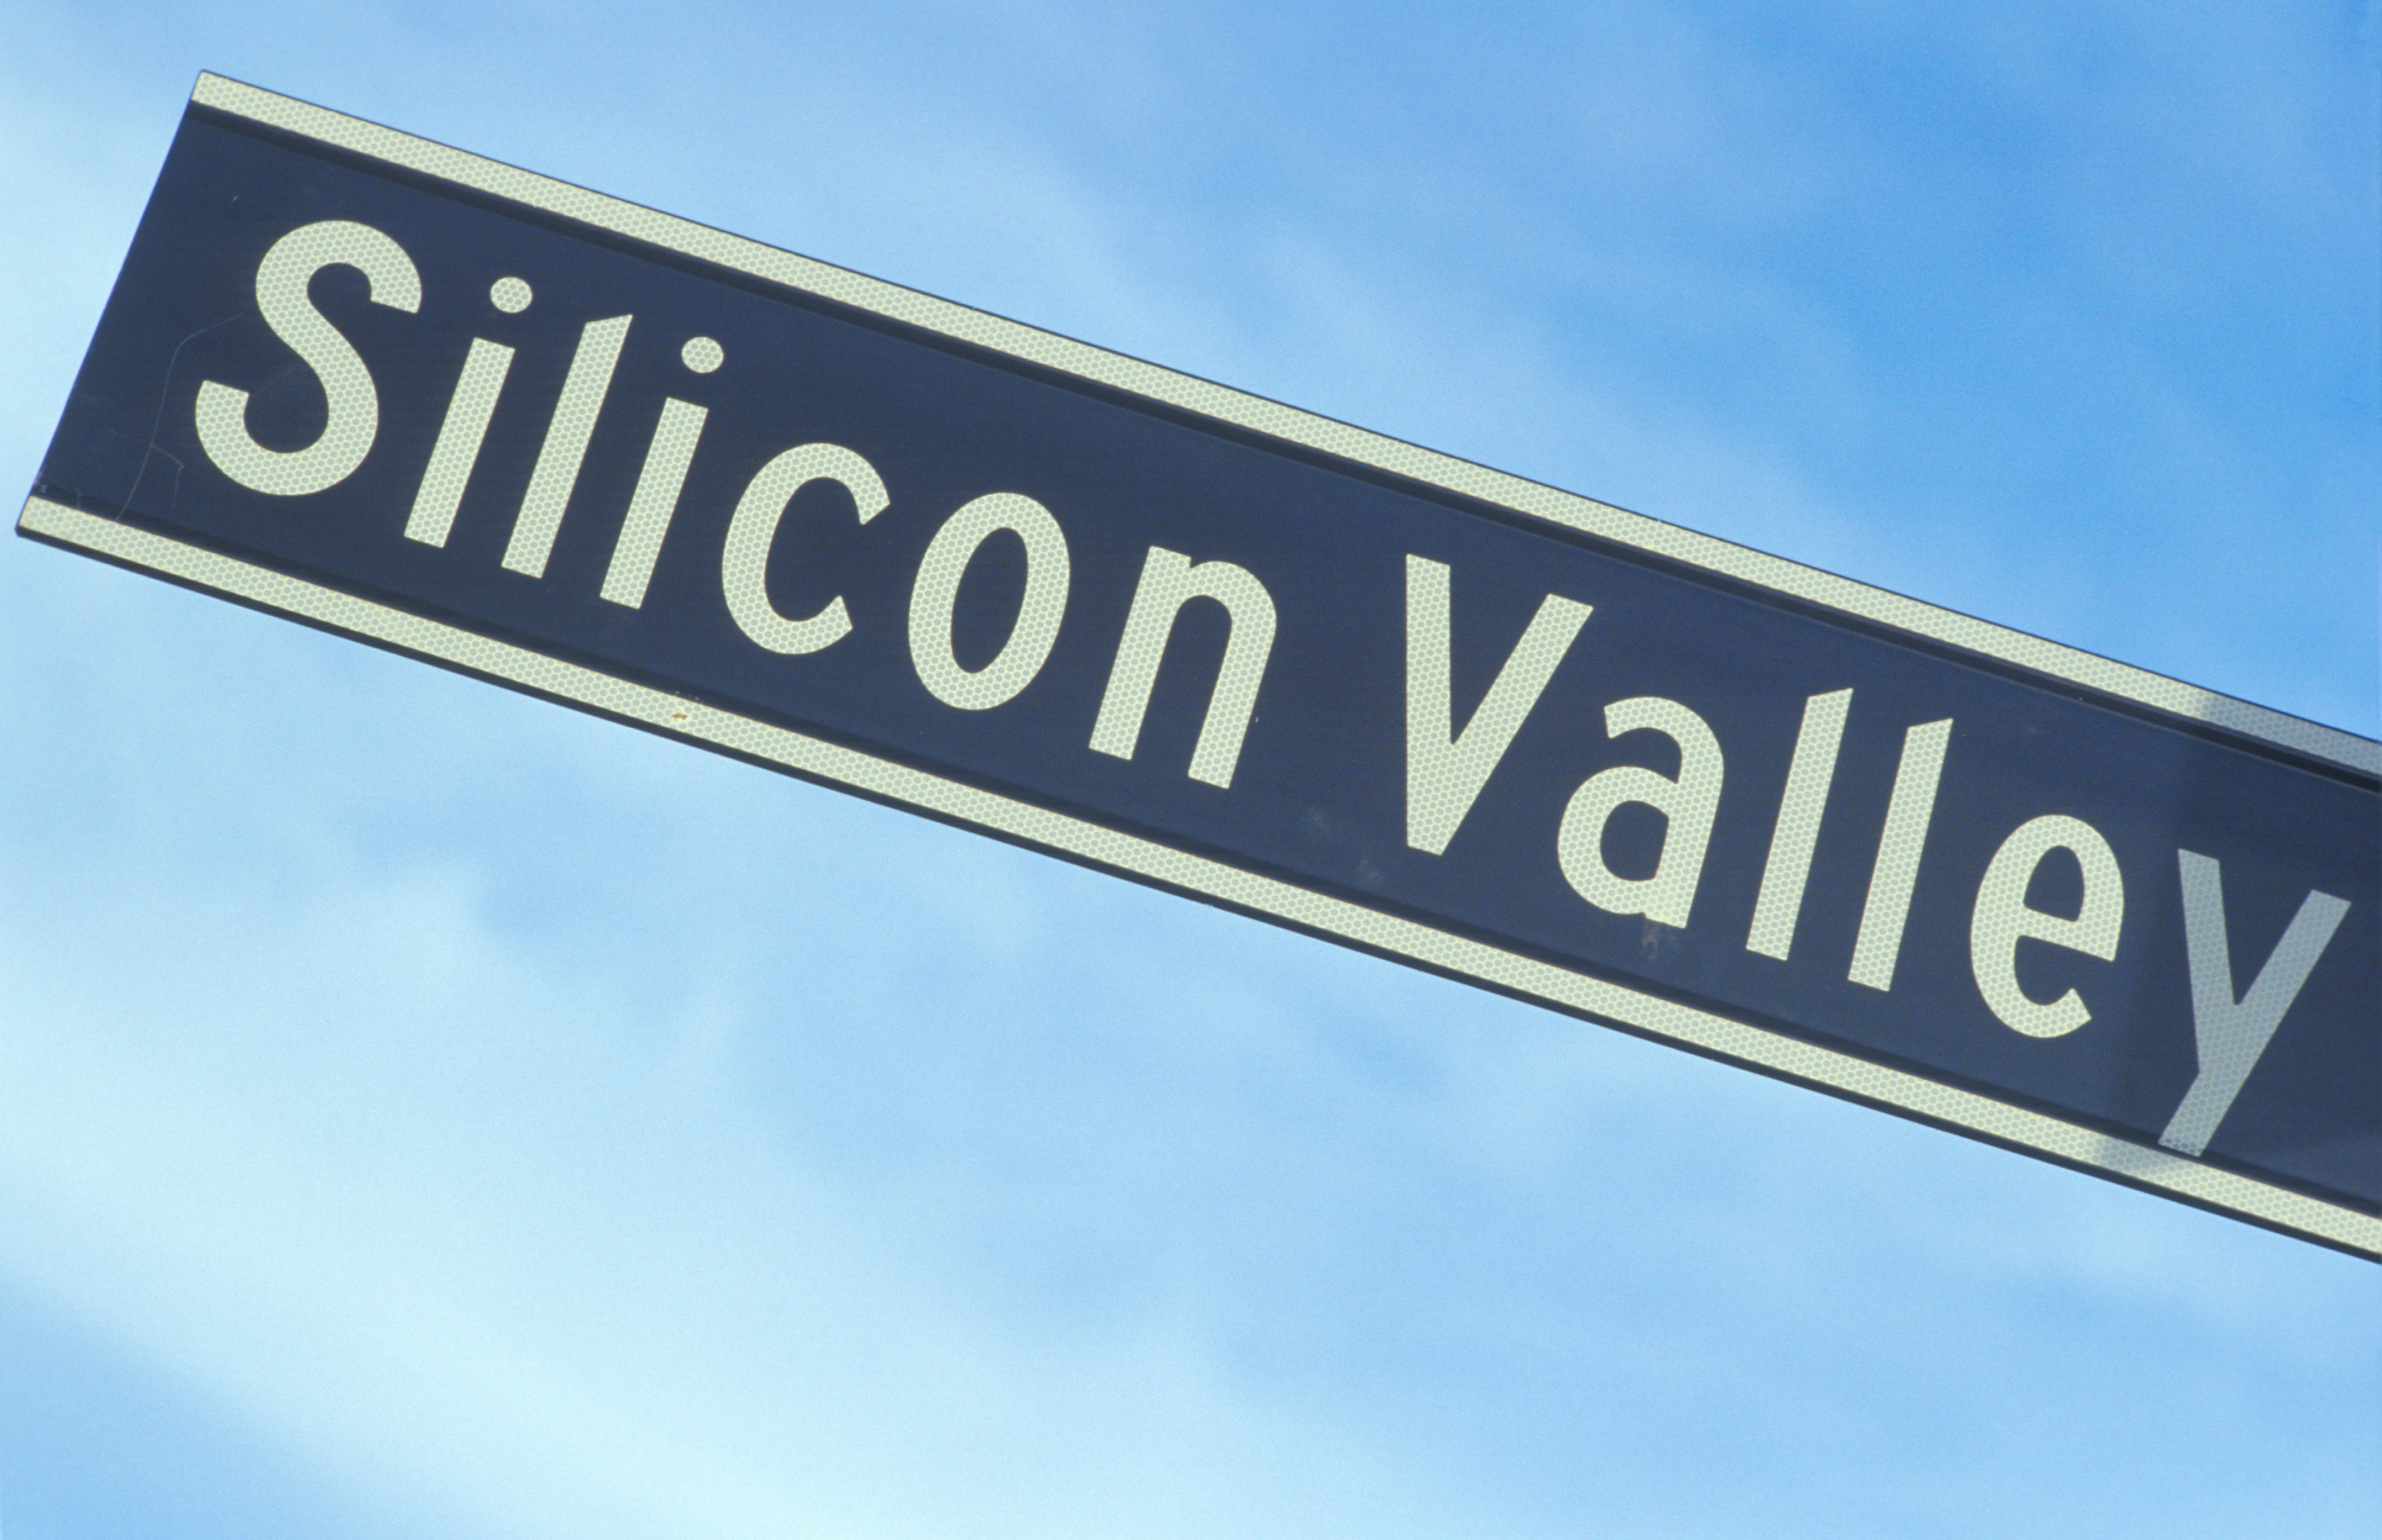 Diese 3 jungen Aktien aus dem Silicon Valley könnten zu den KI-Profiteuren gehören